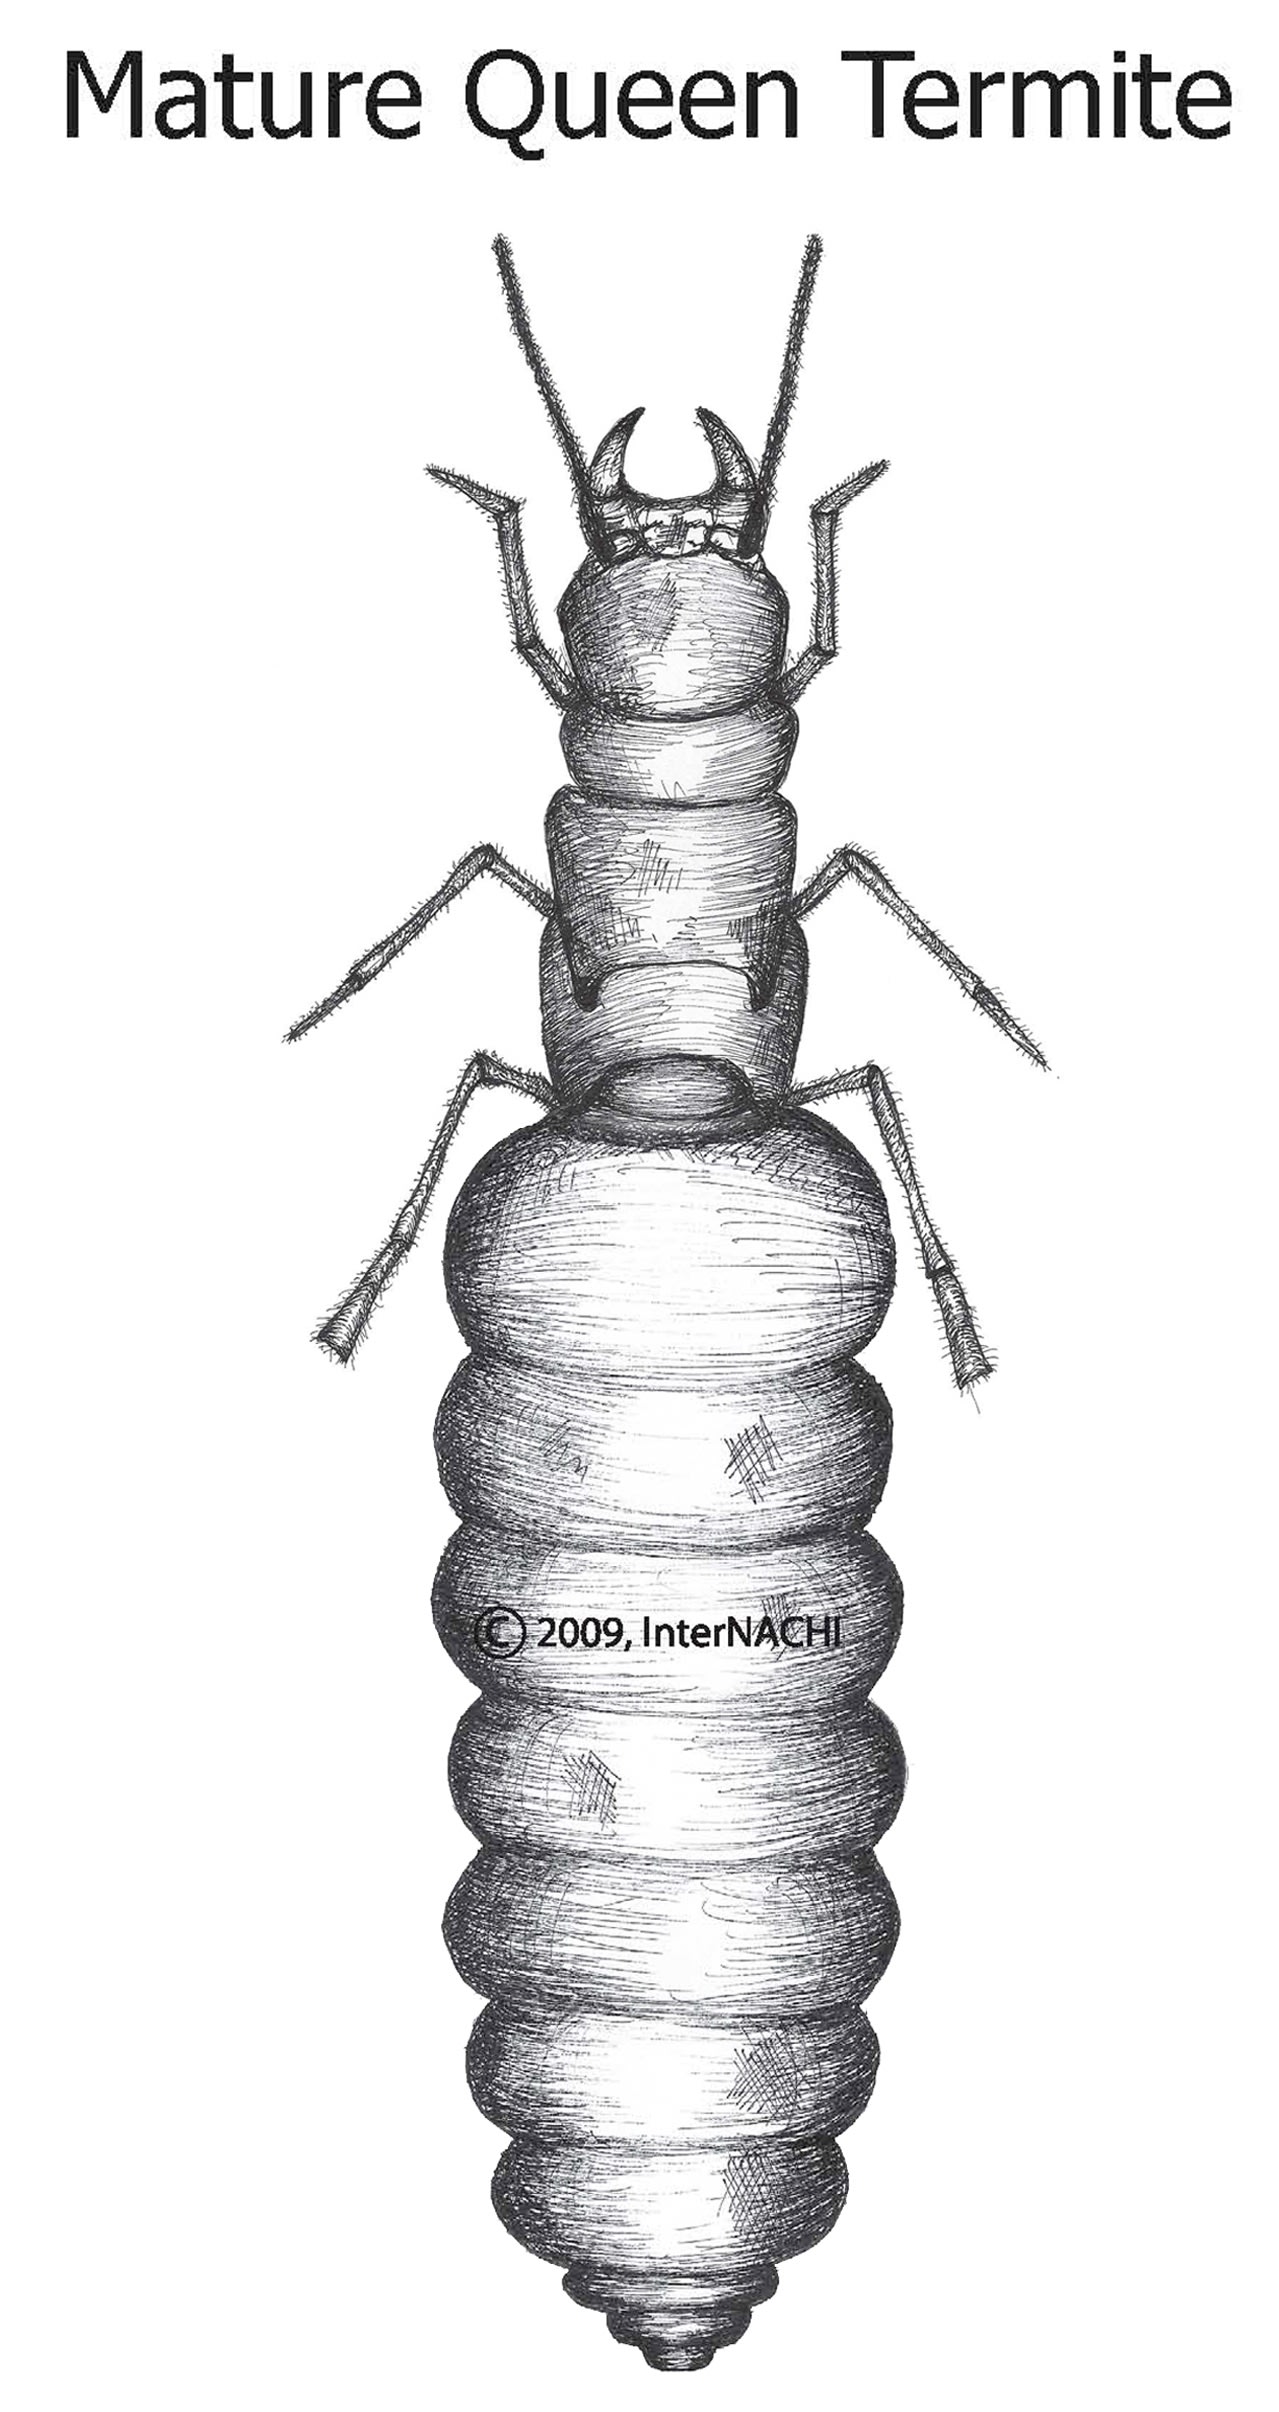 Mature queen termite.